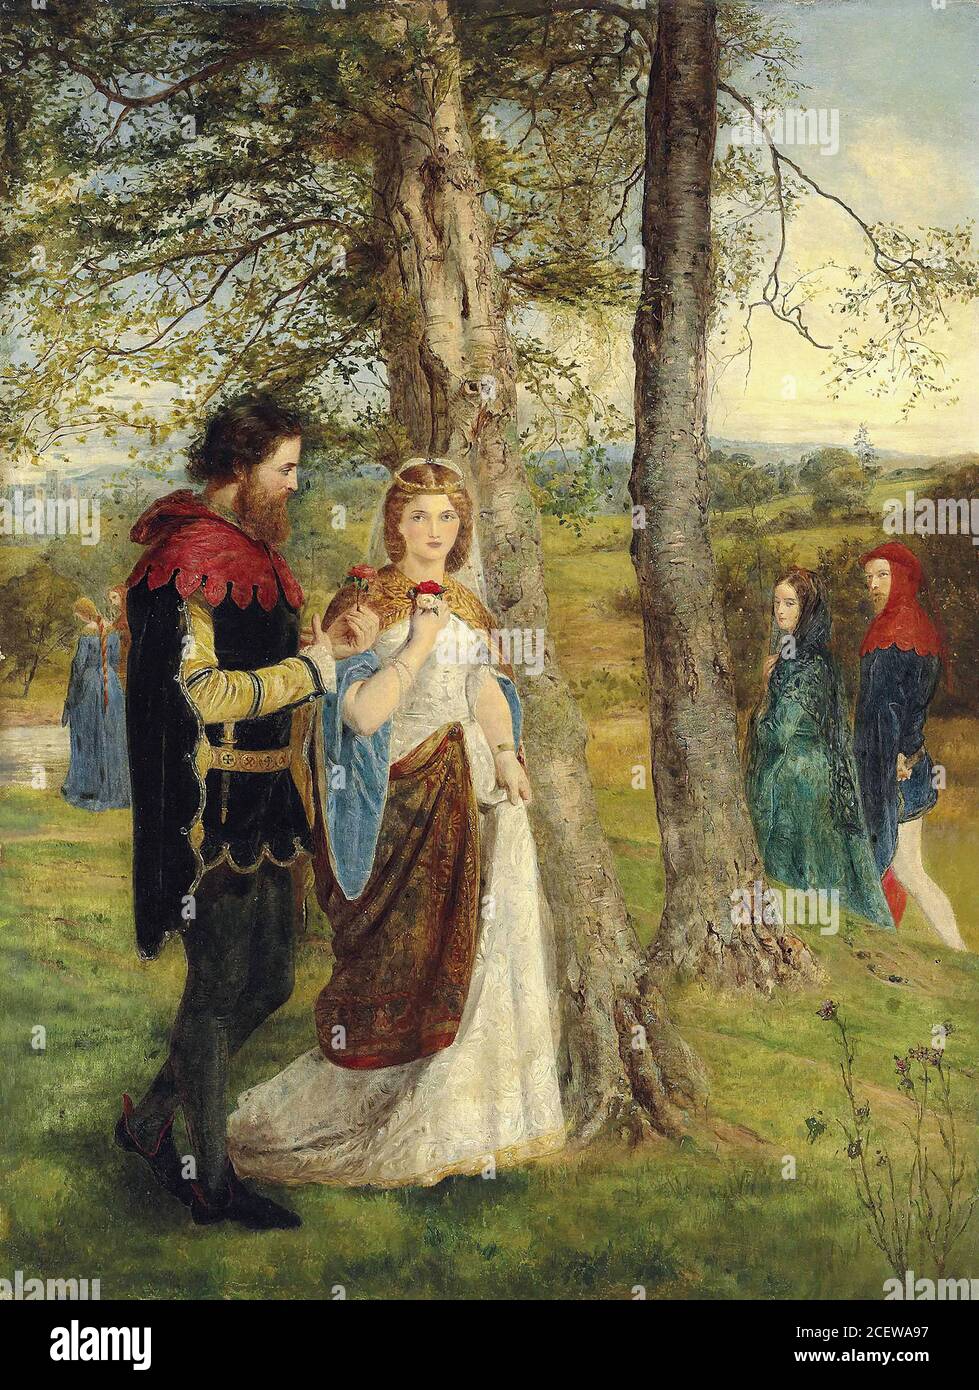 Archer James - Sir Lancelot et la reine Guinevere - Britannique École - 19e siècle Banque D'Images